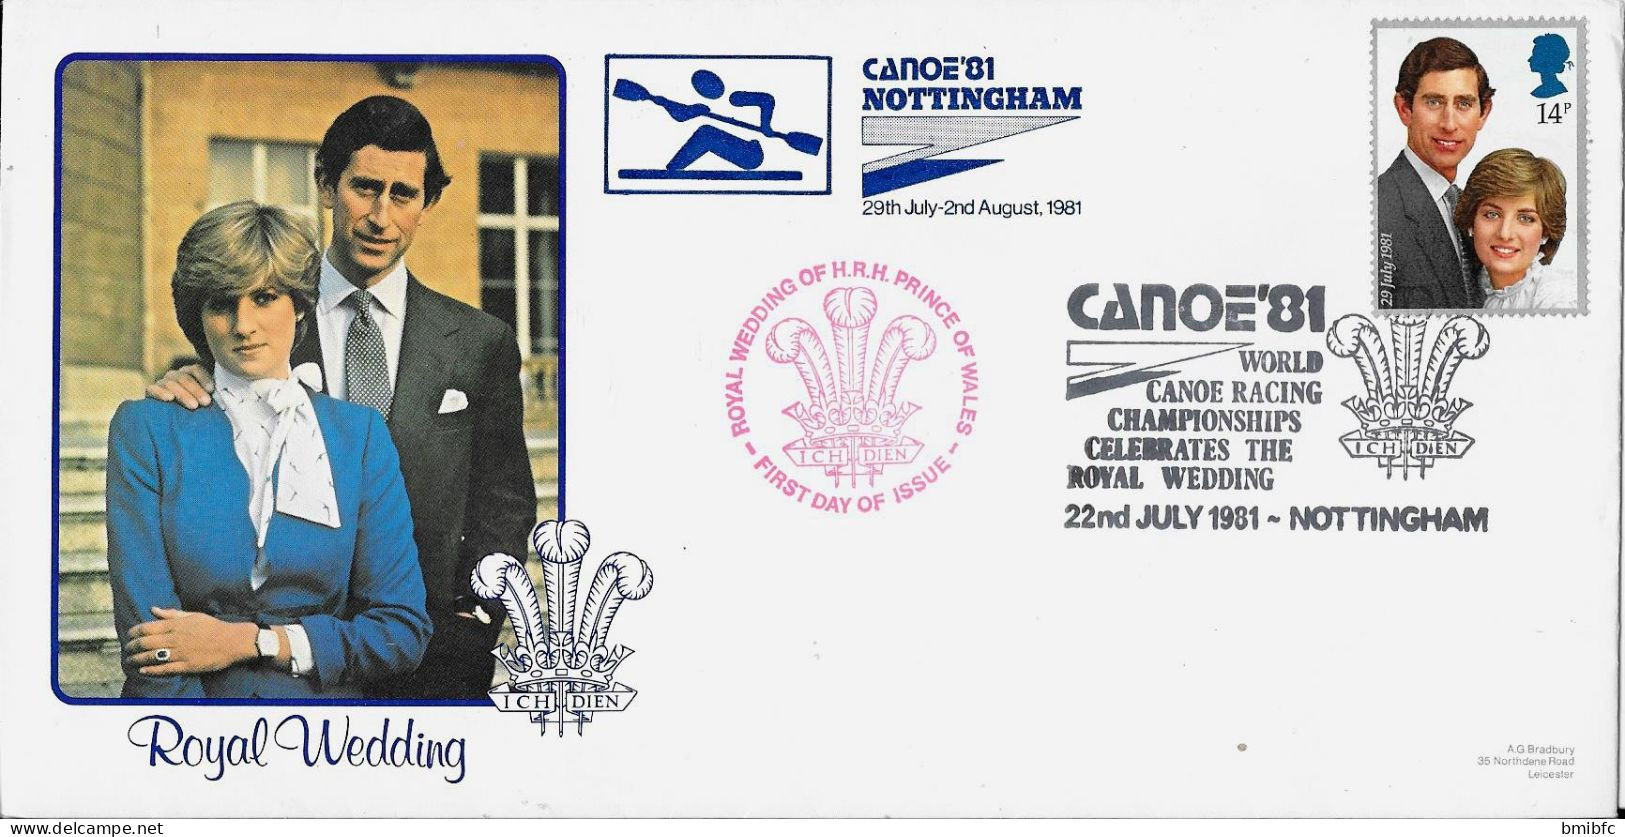 CANOE'81 NOTTINGHAM 22nd JULY 1981 - Kano